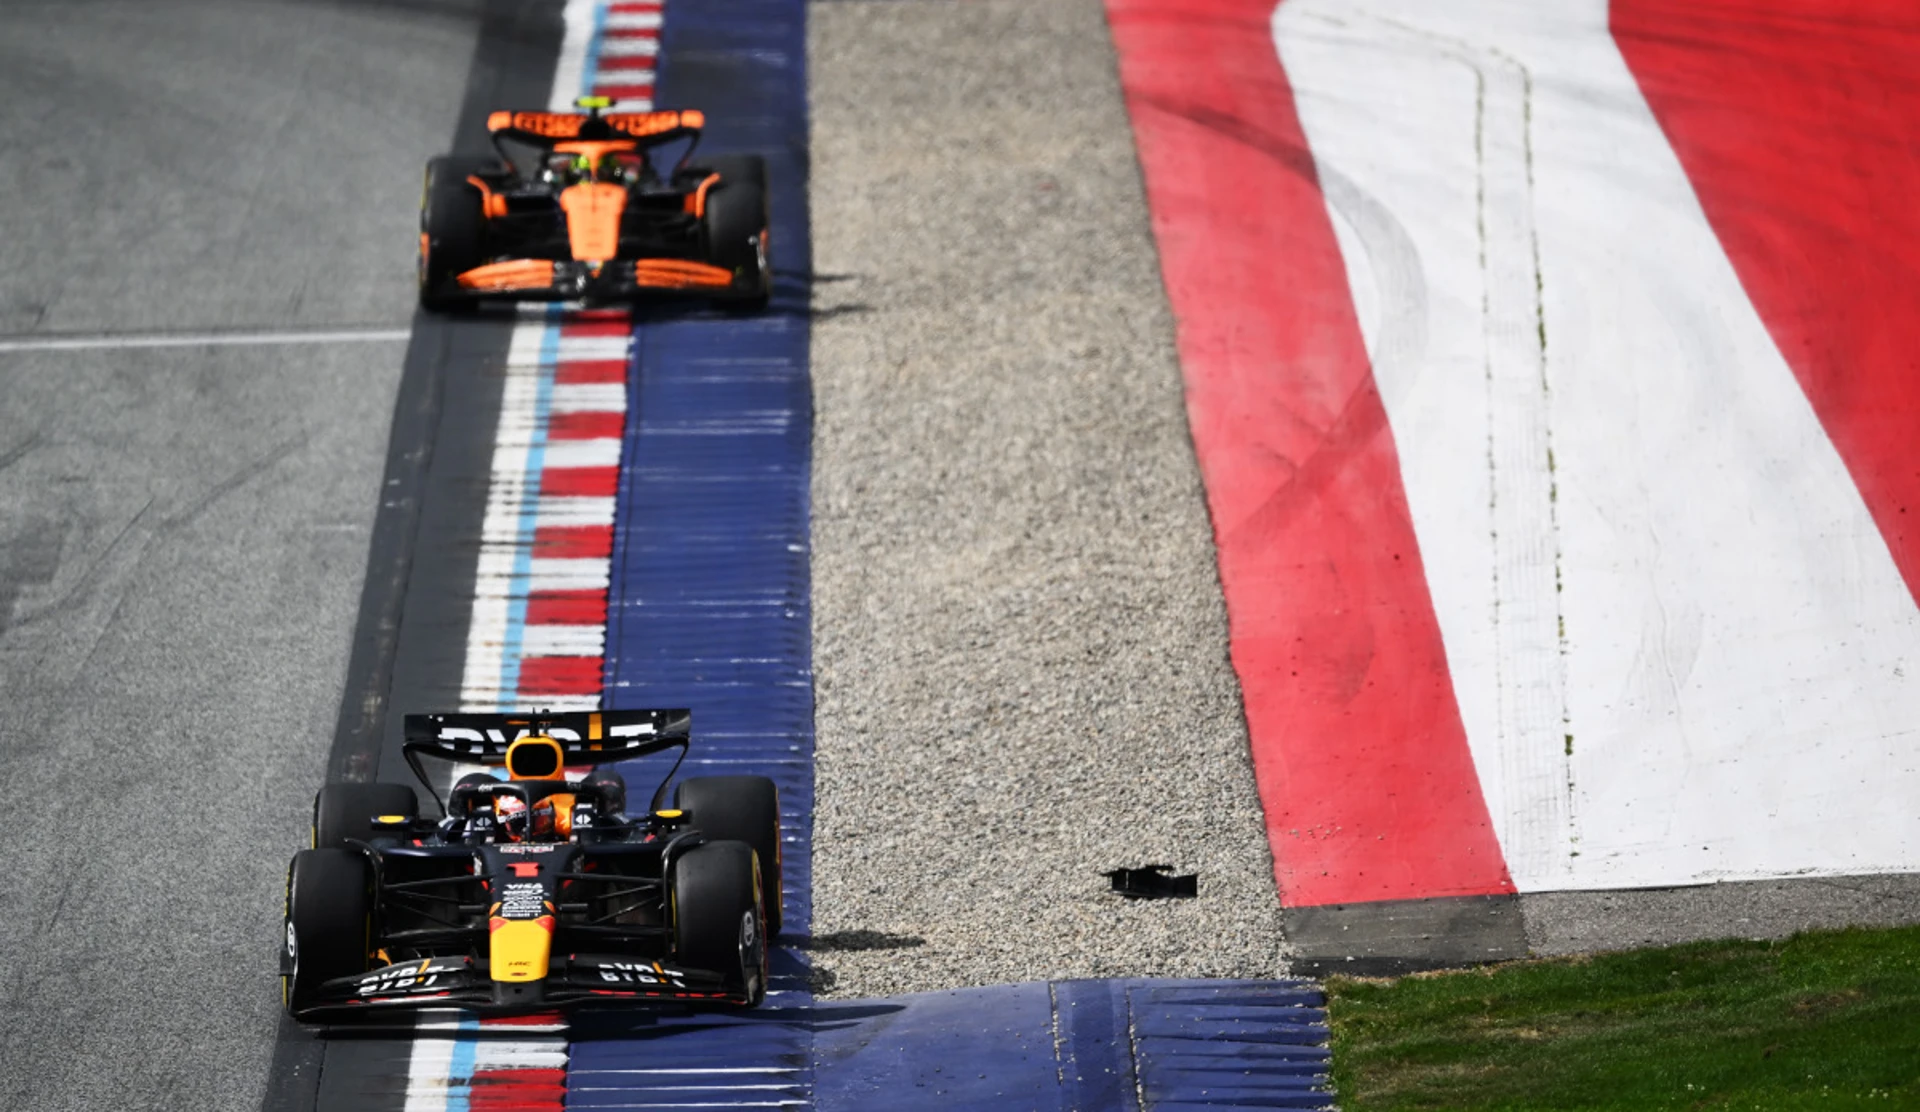 McLaren boss swipes at Red Bull as crash dispute rumbles on